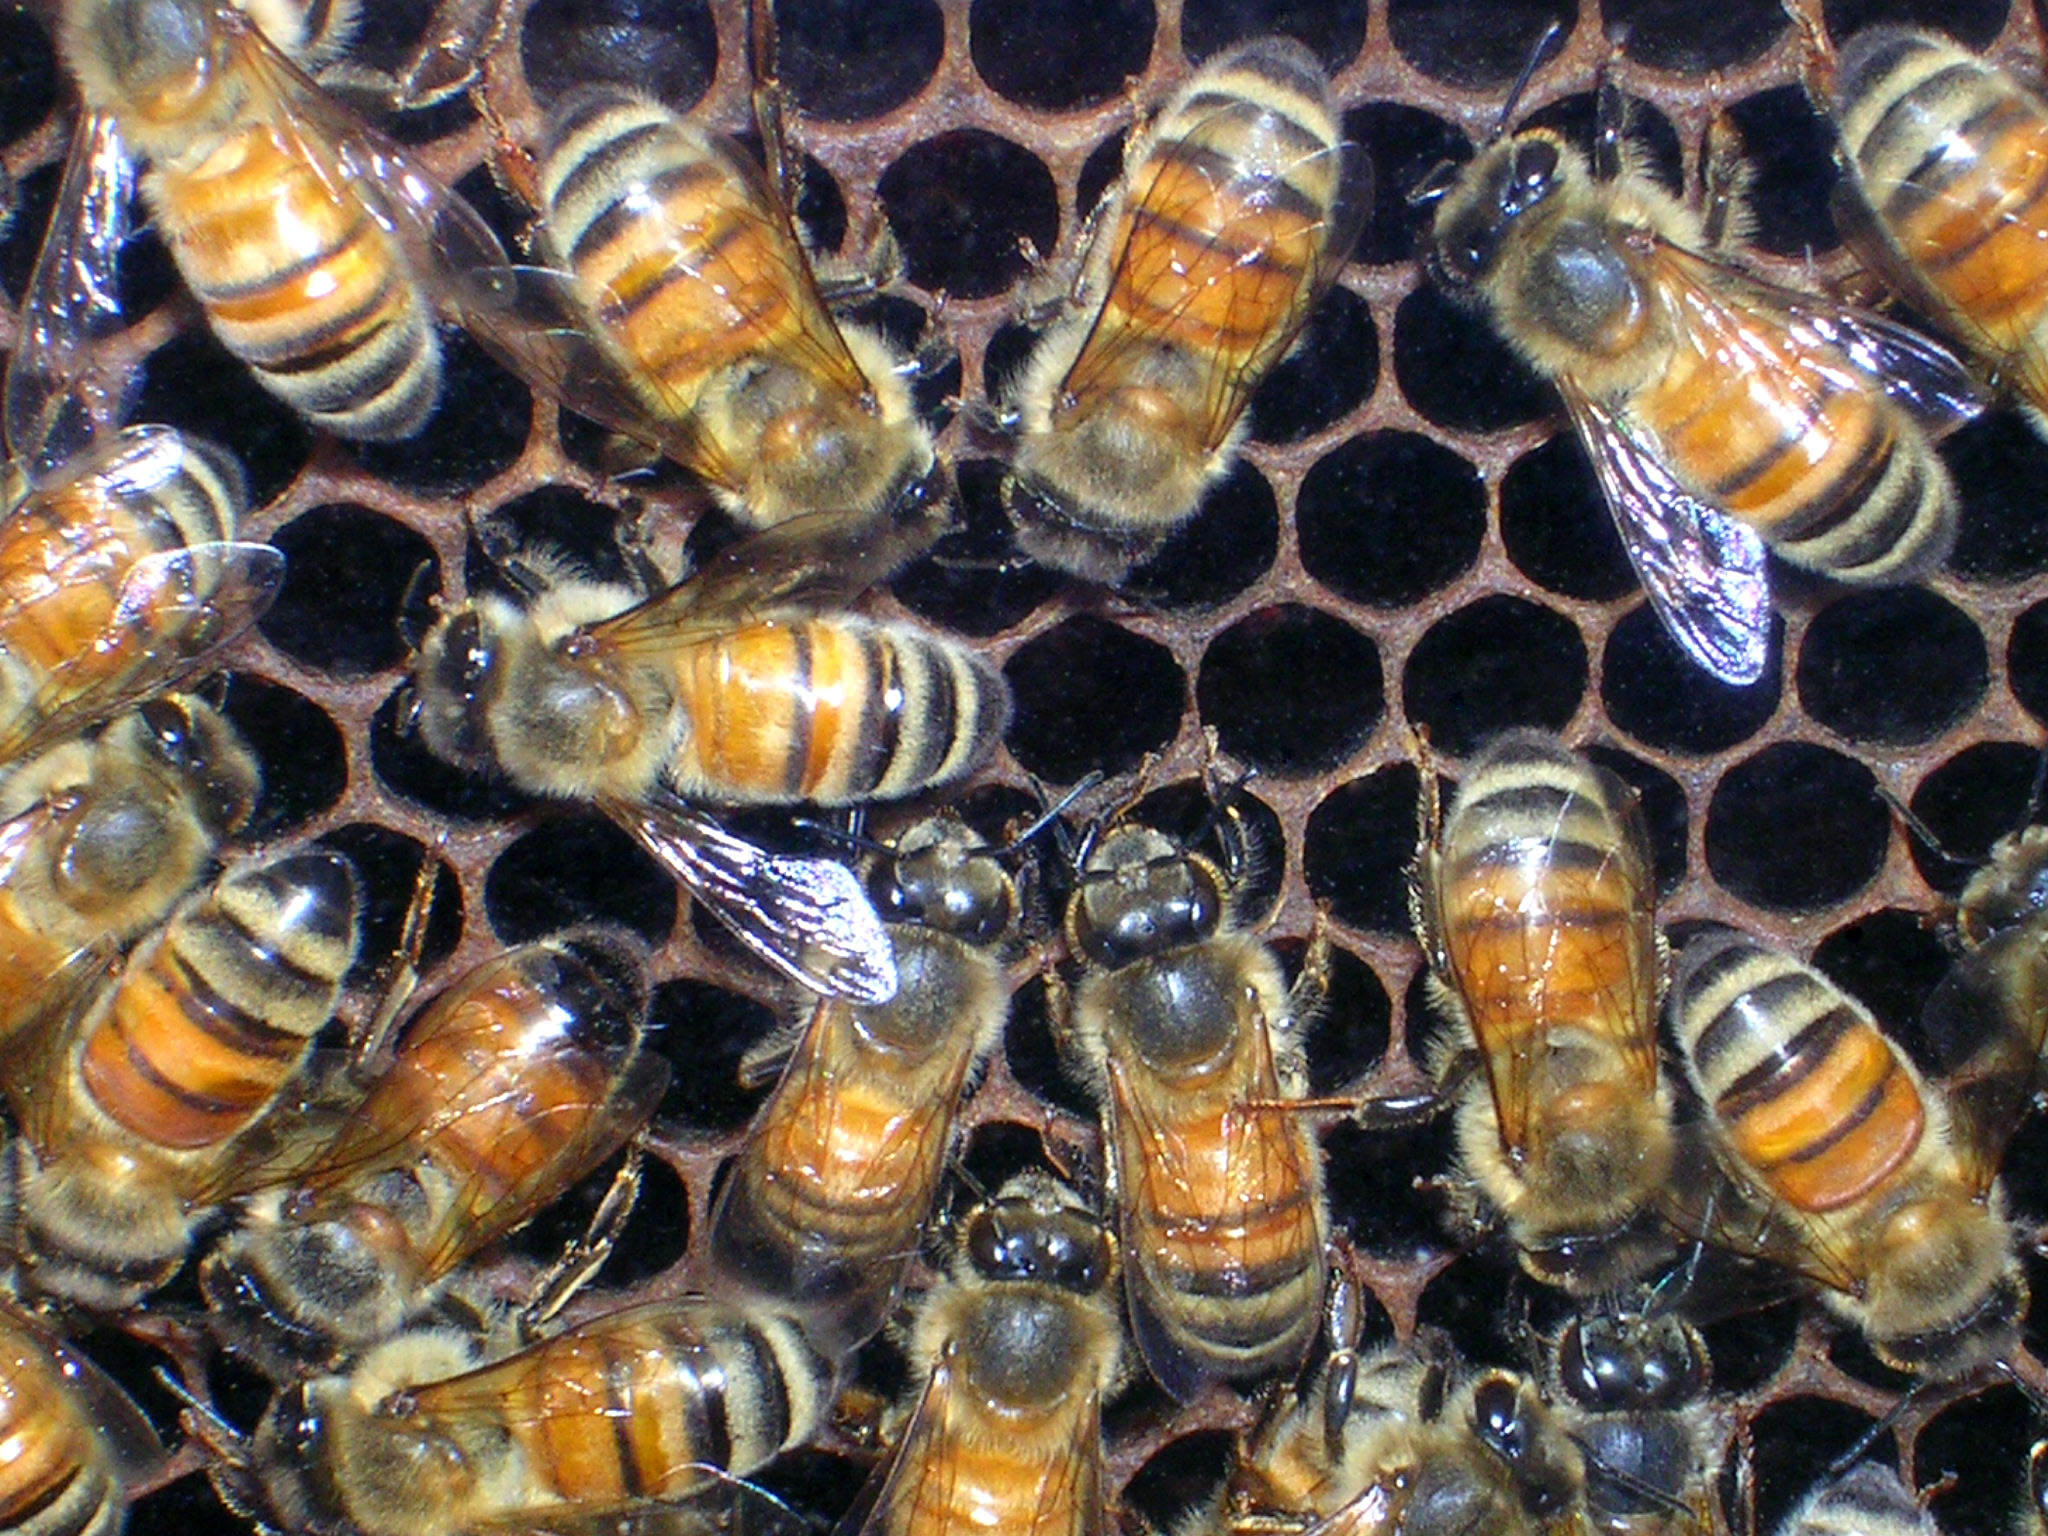 Скачать обои бесплатно Животные, Насекомые, Пчела картинка на рабочий стол ПК